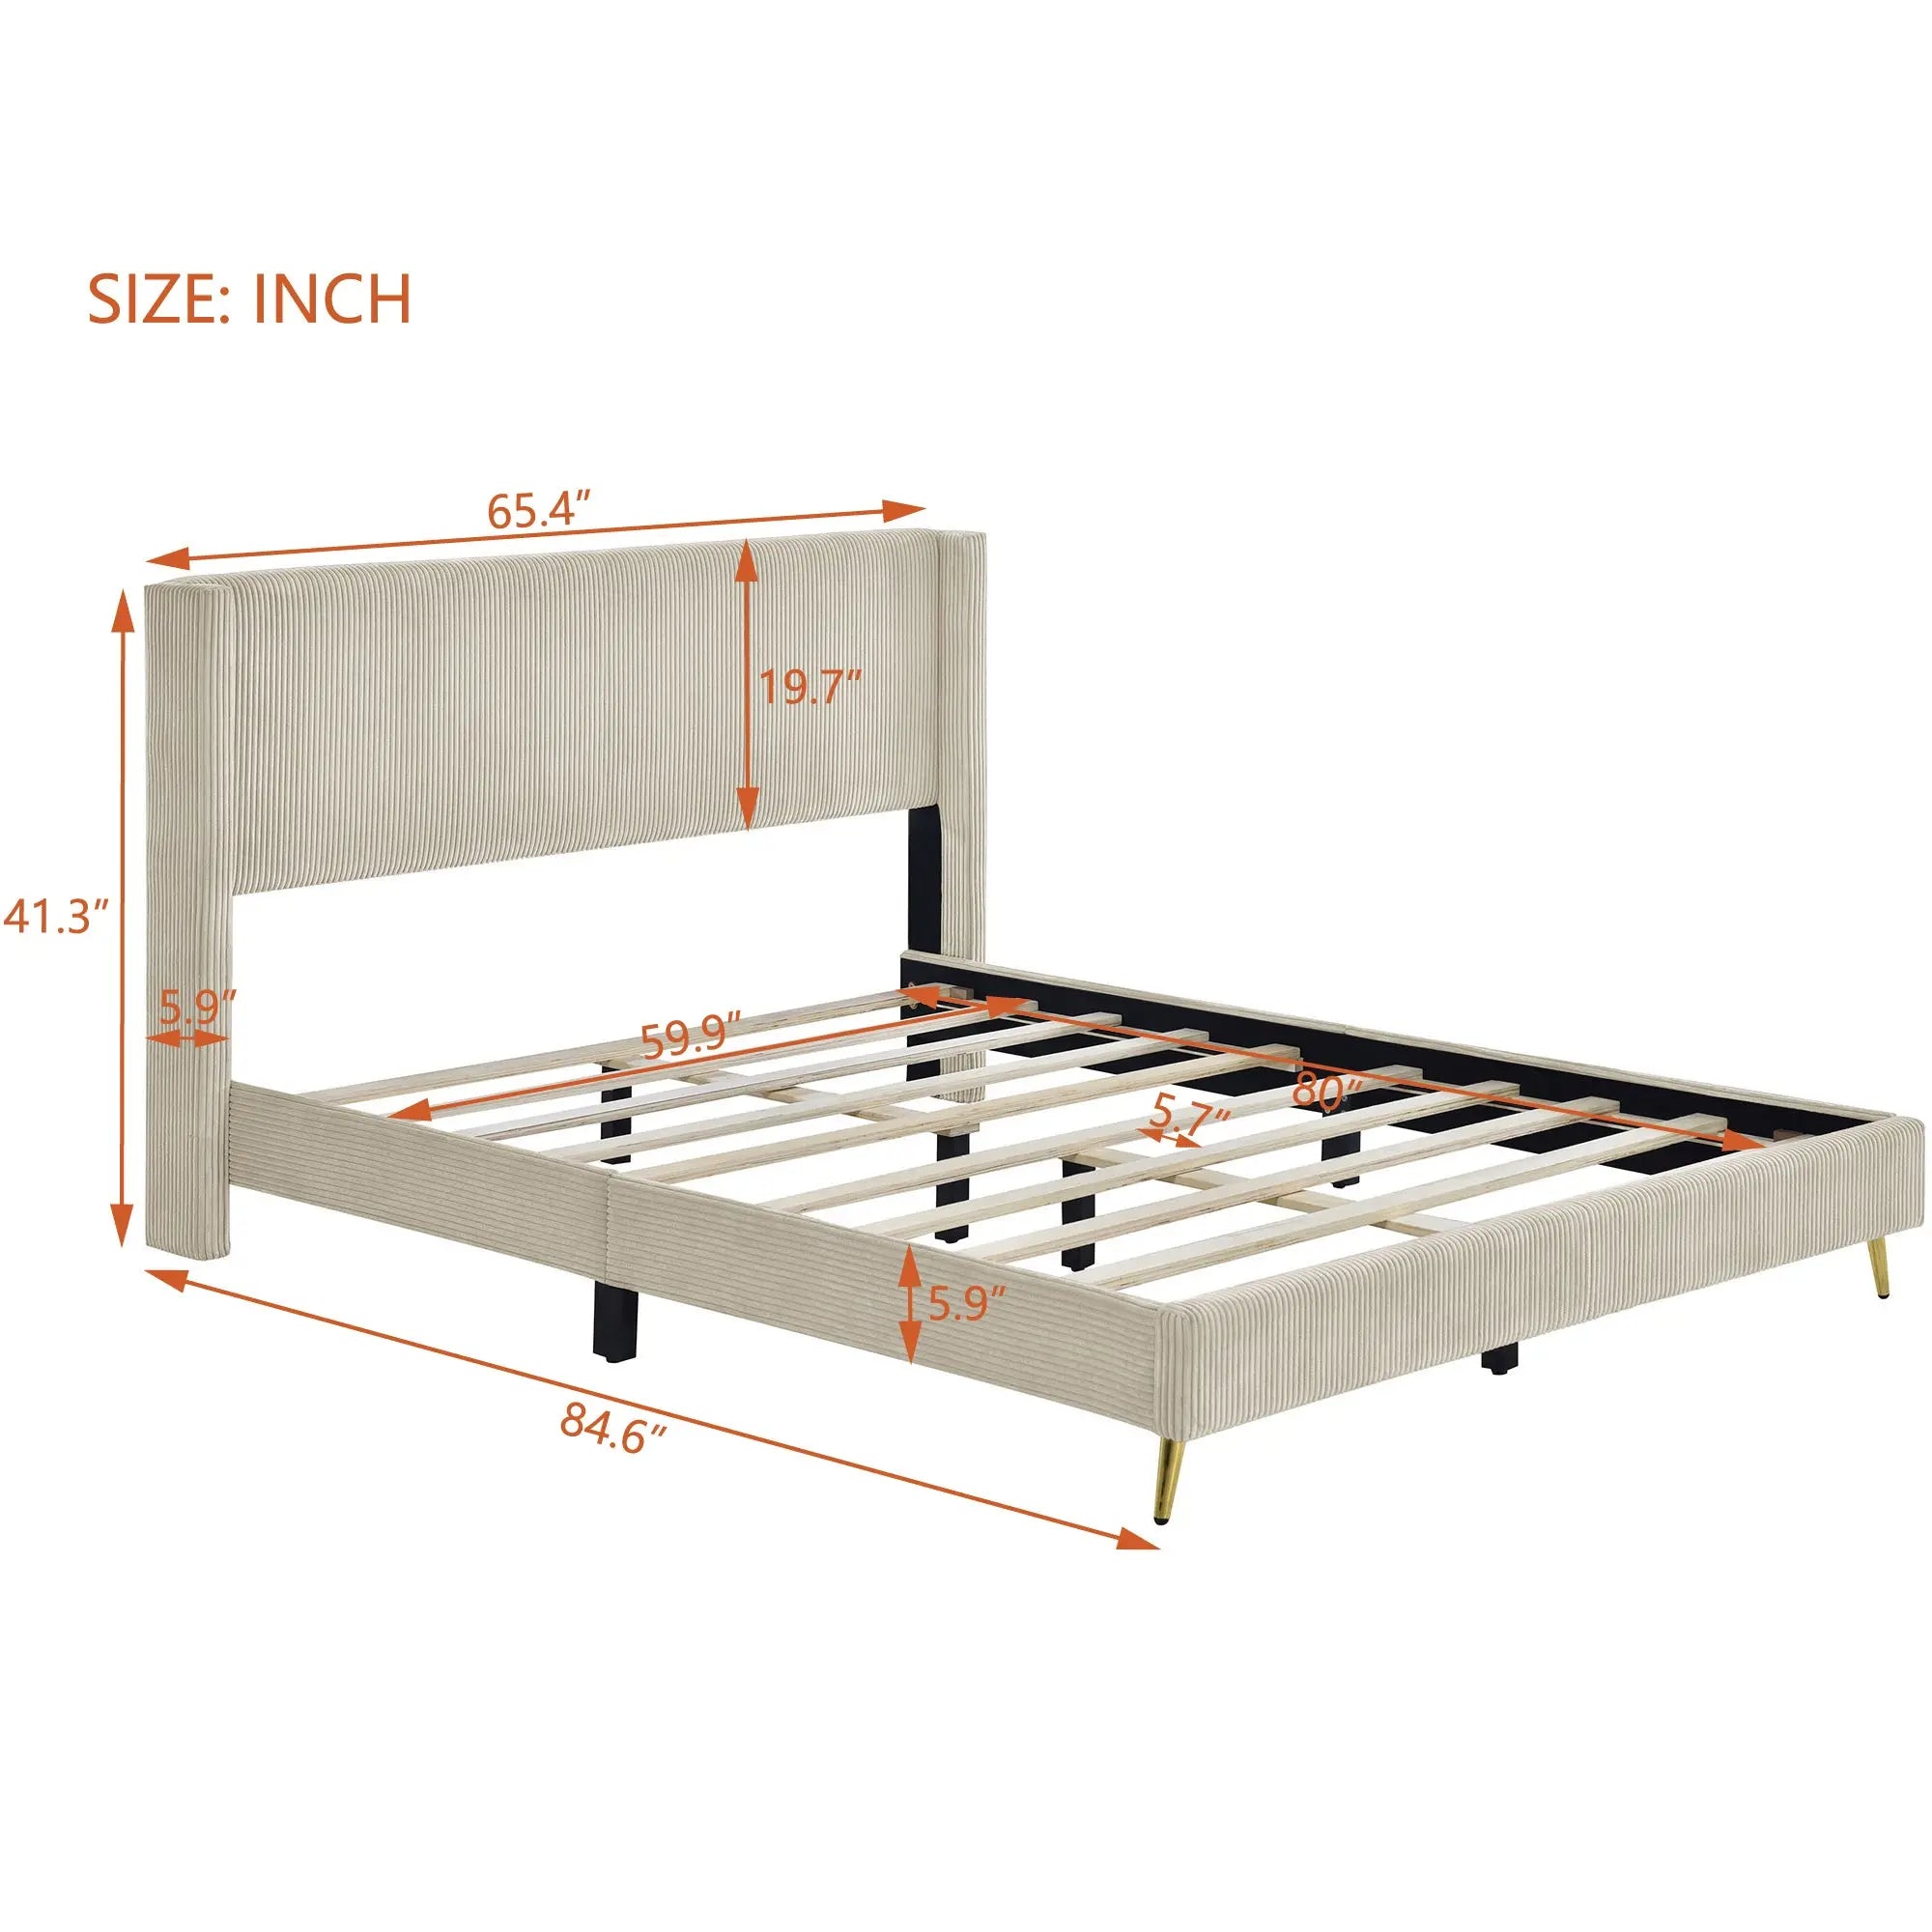 Bellemave® Queen Size Corduroy Platform Bed with Metal Legs